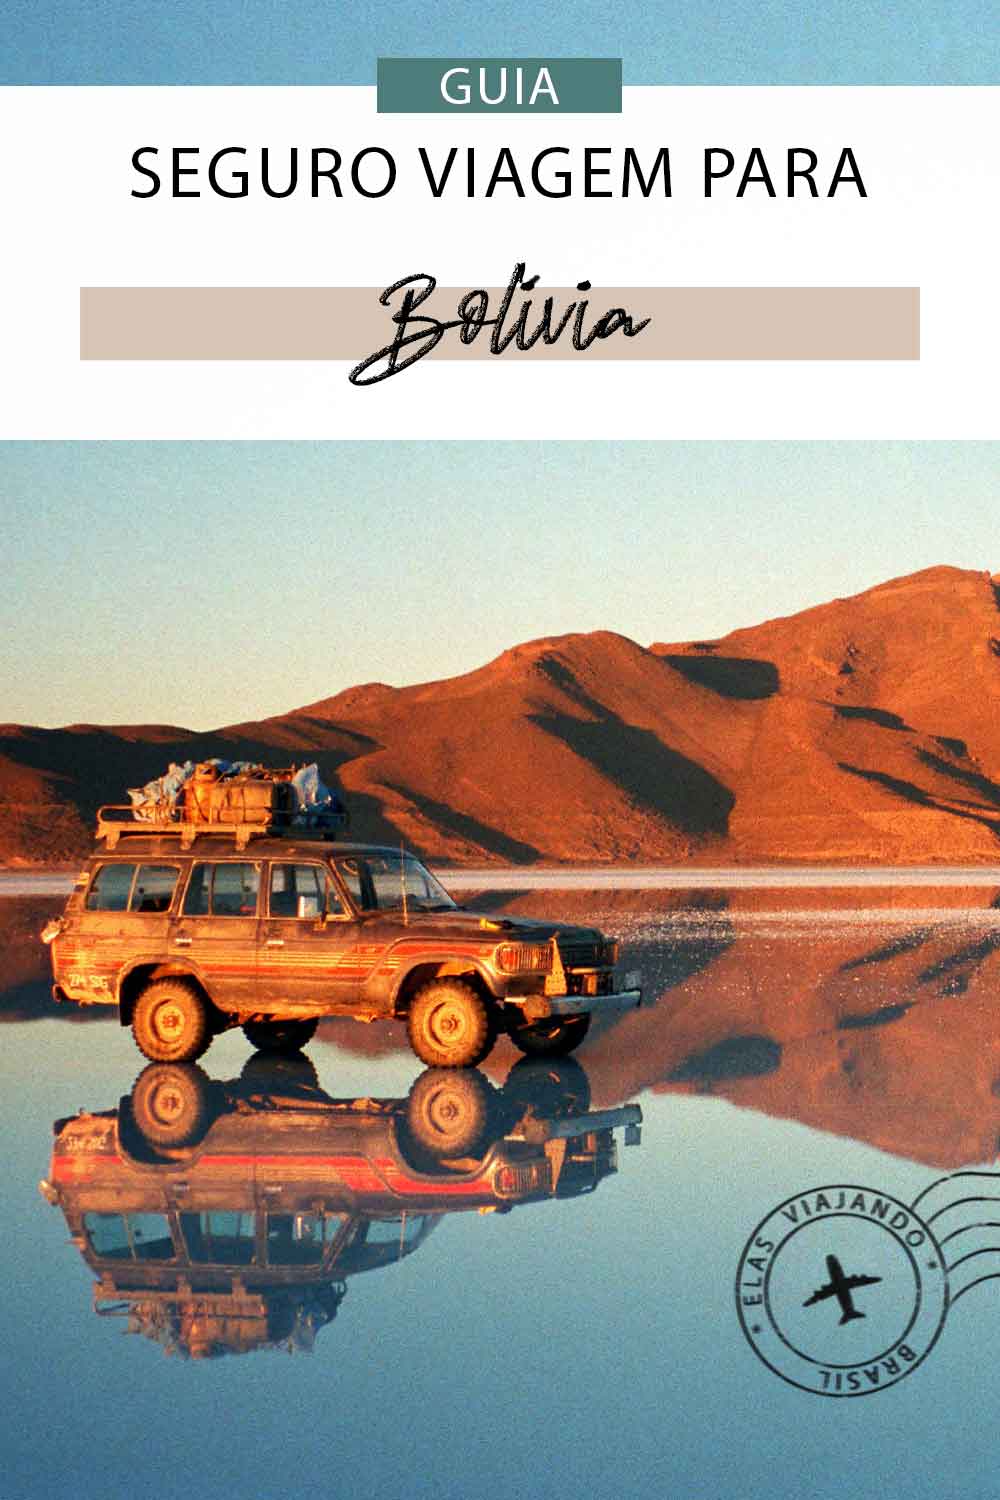 Seguro Viagem para Bolívia